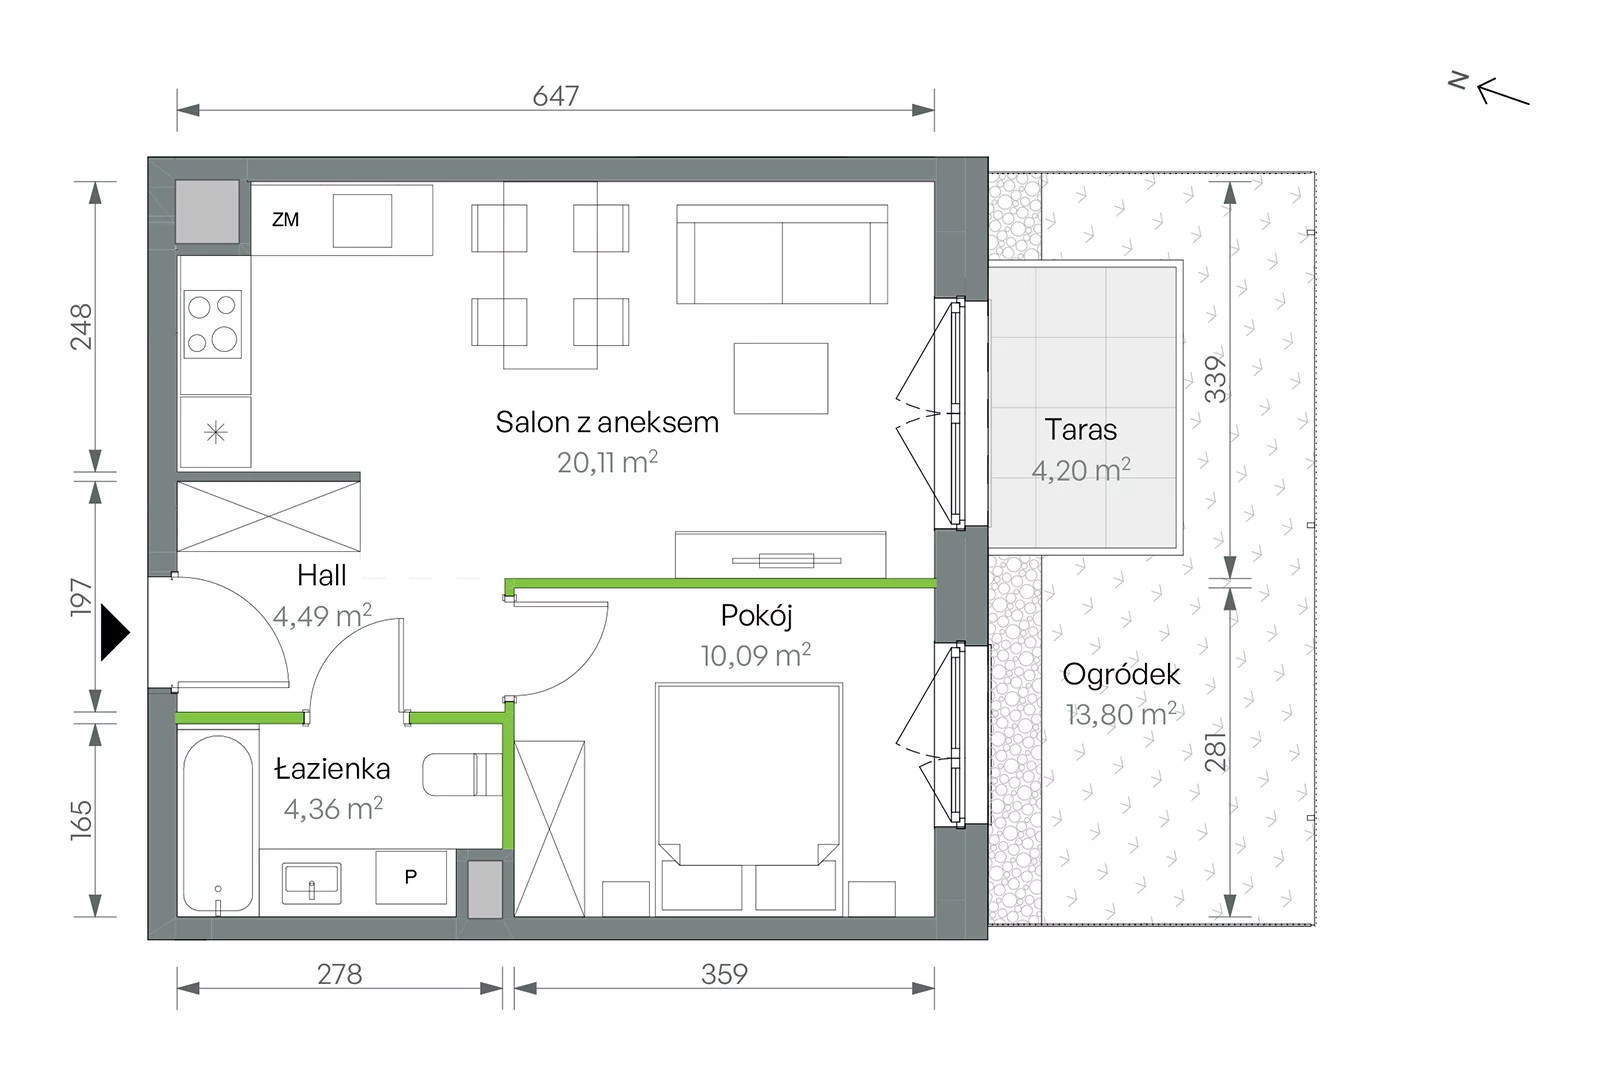 Mieszkanie 39,05 m², parter, oferta nr 2/B/1/02, Oliwska Vita etap II, Warszawa, Targówek, Bródno, ul. Oliwska 11